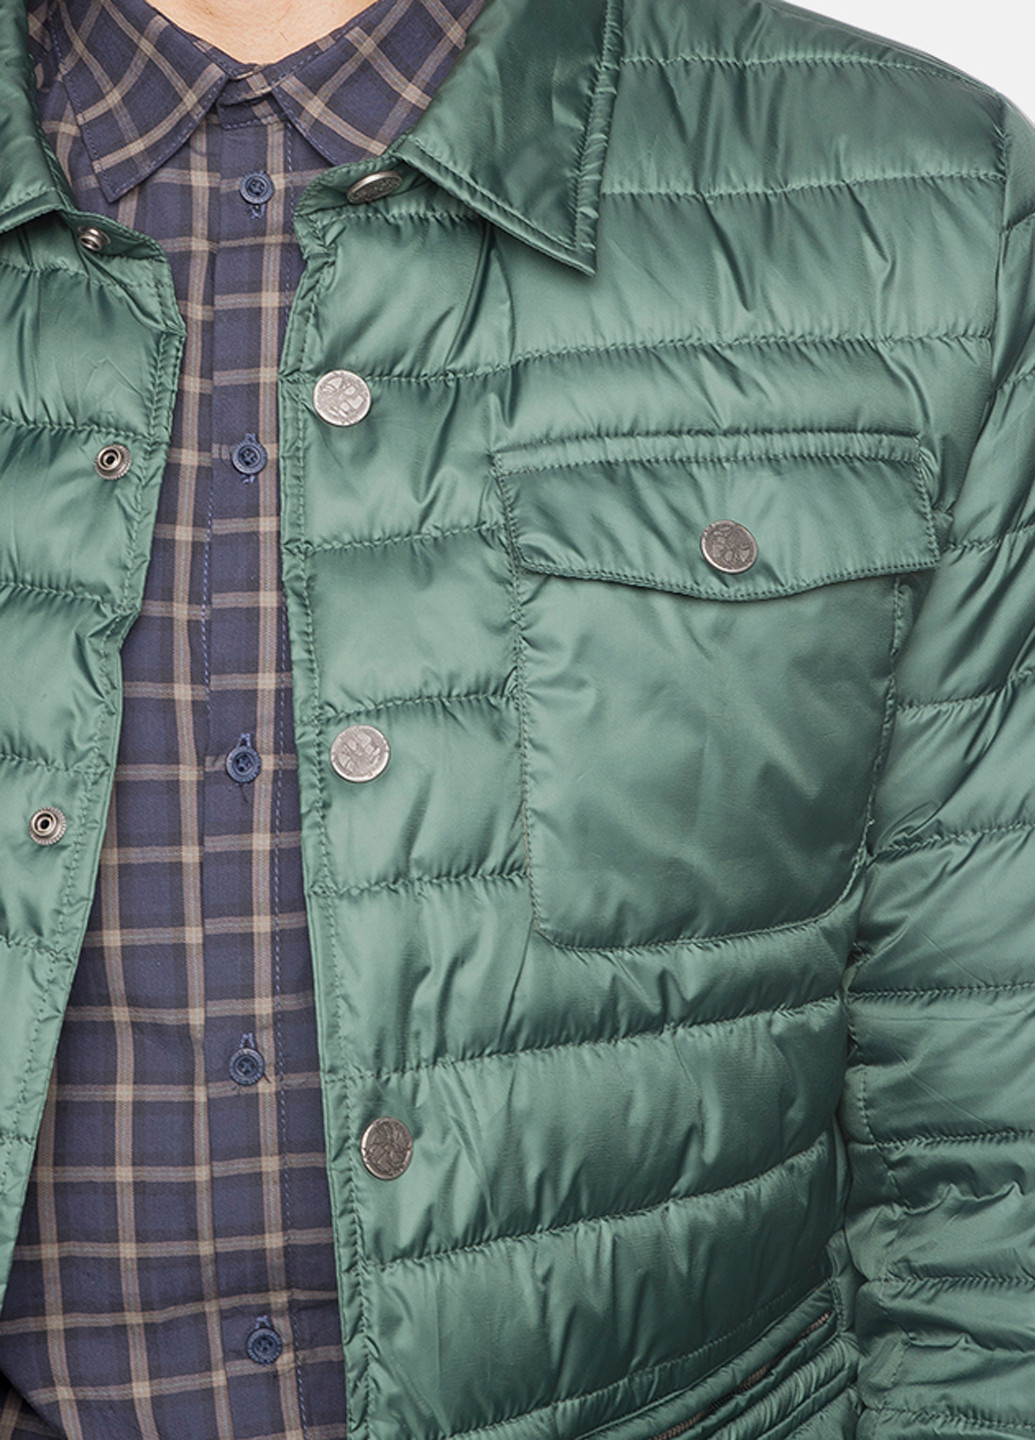 Зеленая демисезонная куртка MR 520